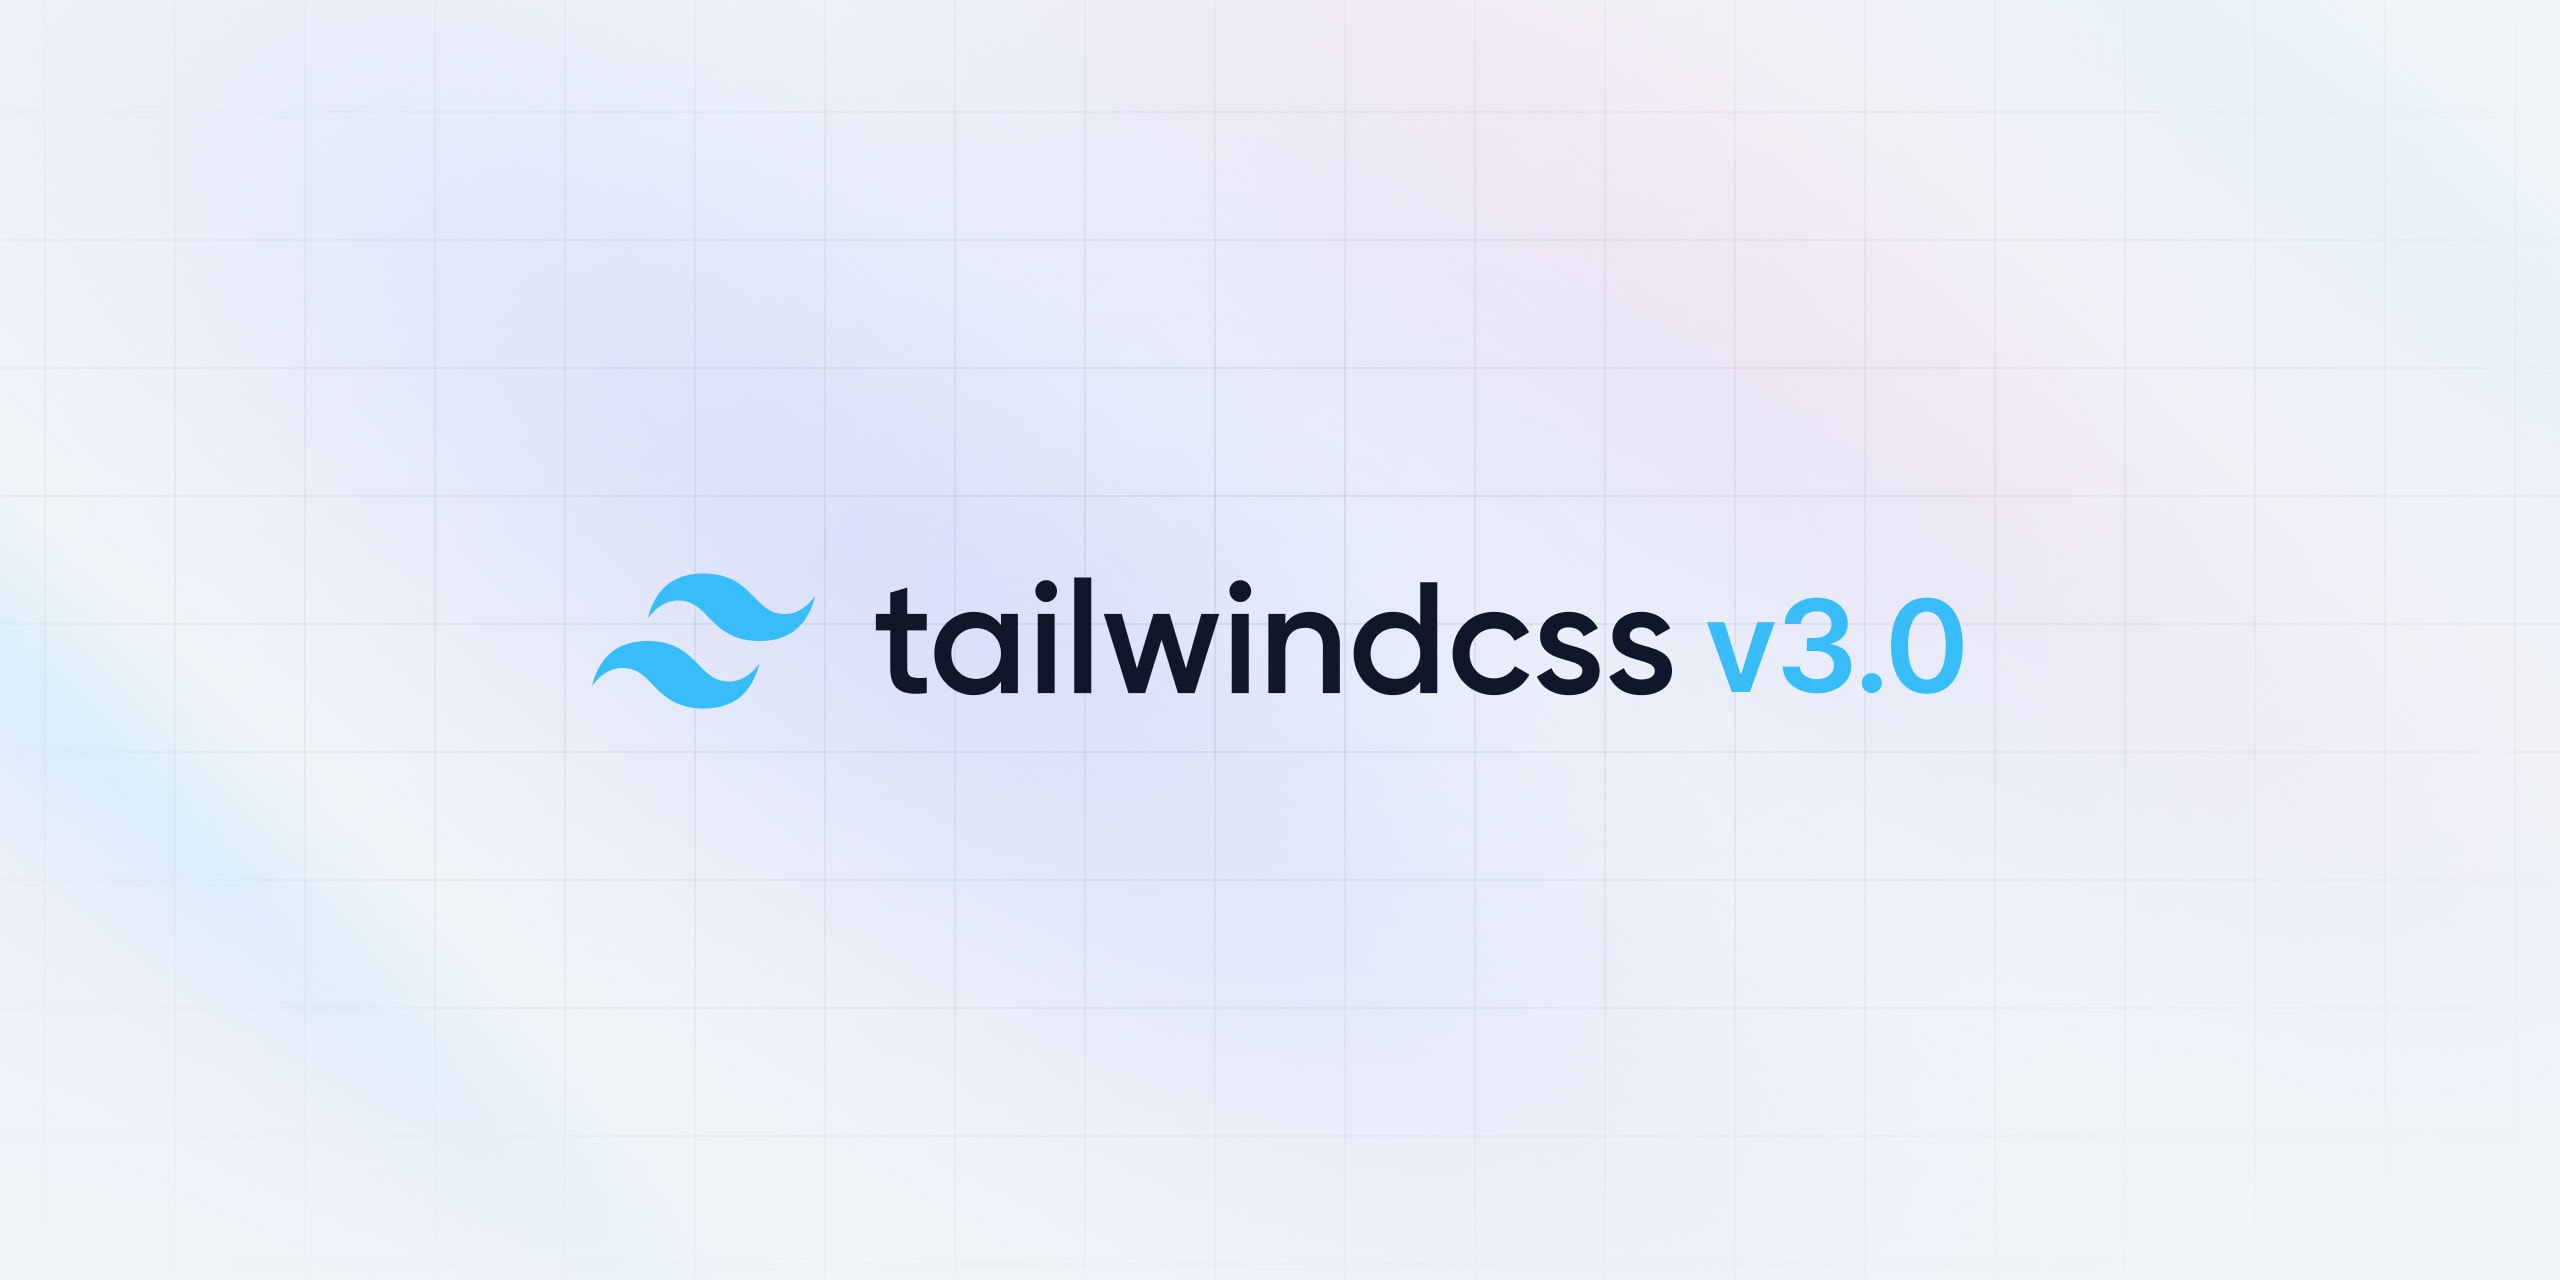 Phiên bản 3.0 của Tailwind CSS đã chính thức ra mắt với những tính năng mới và cải tiến tuyệt vời. Hãy đón nhận và trải nghiệm sự tiện ích và mạnh mẽ của phiên bản mới này để tạo ra những trang web đẹp và chuyên nghiệp hơn.